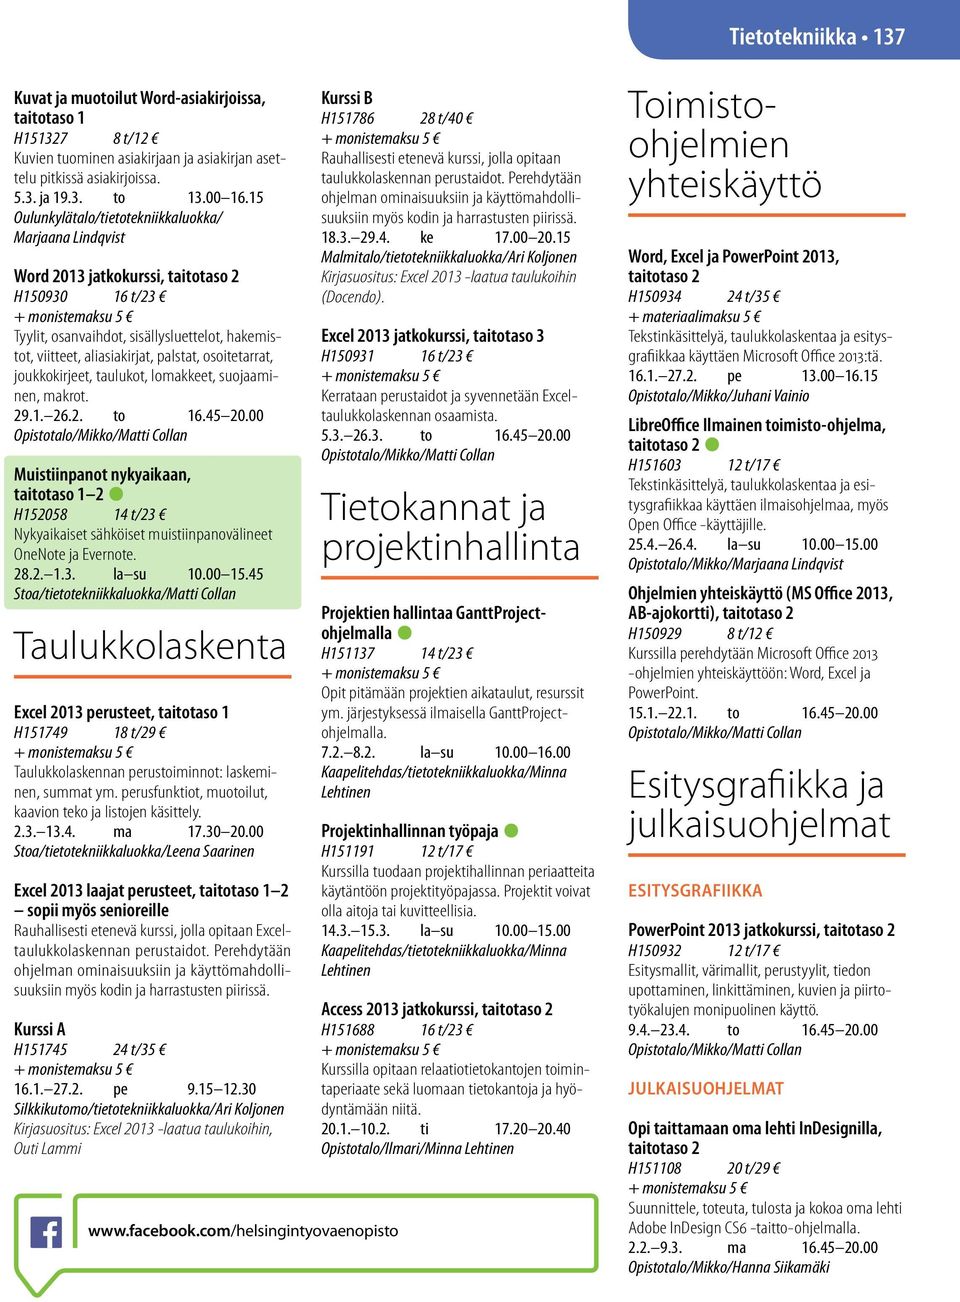 suojaaminen, makrot. 29.1. 26.2. to 16.45 20.00 Opistotalo/Mikko/Matti Collan Muistiinpanot nykyaikaan, 2 H152058 14 t/23 Nykyaikaiset sähköiset muistiinpanovälineet OneNote ja Evernote. 28.2. 1.3. la su 10.